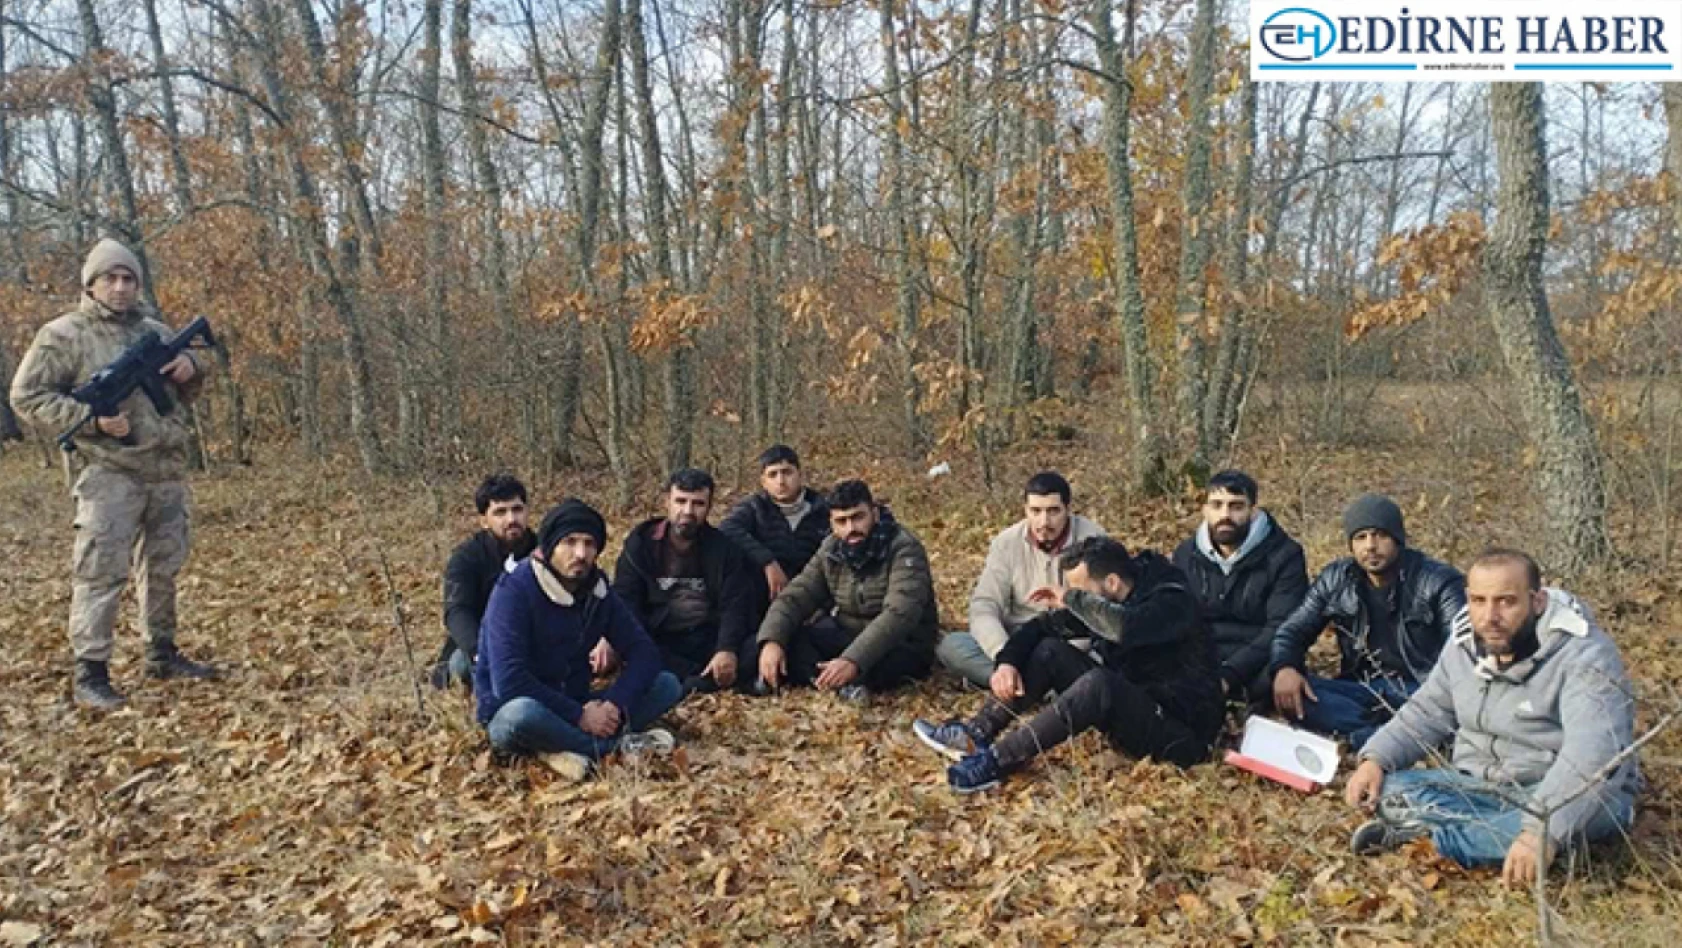 Edirne'de 12 organizatör ve 262 göçmen yakalandı